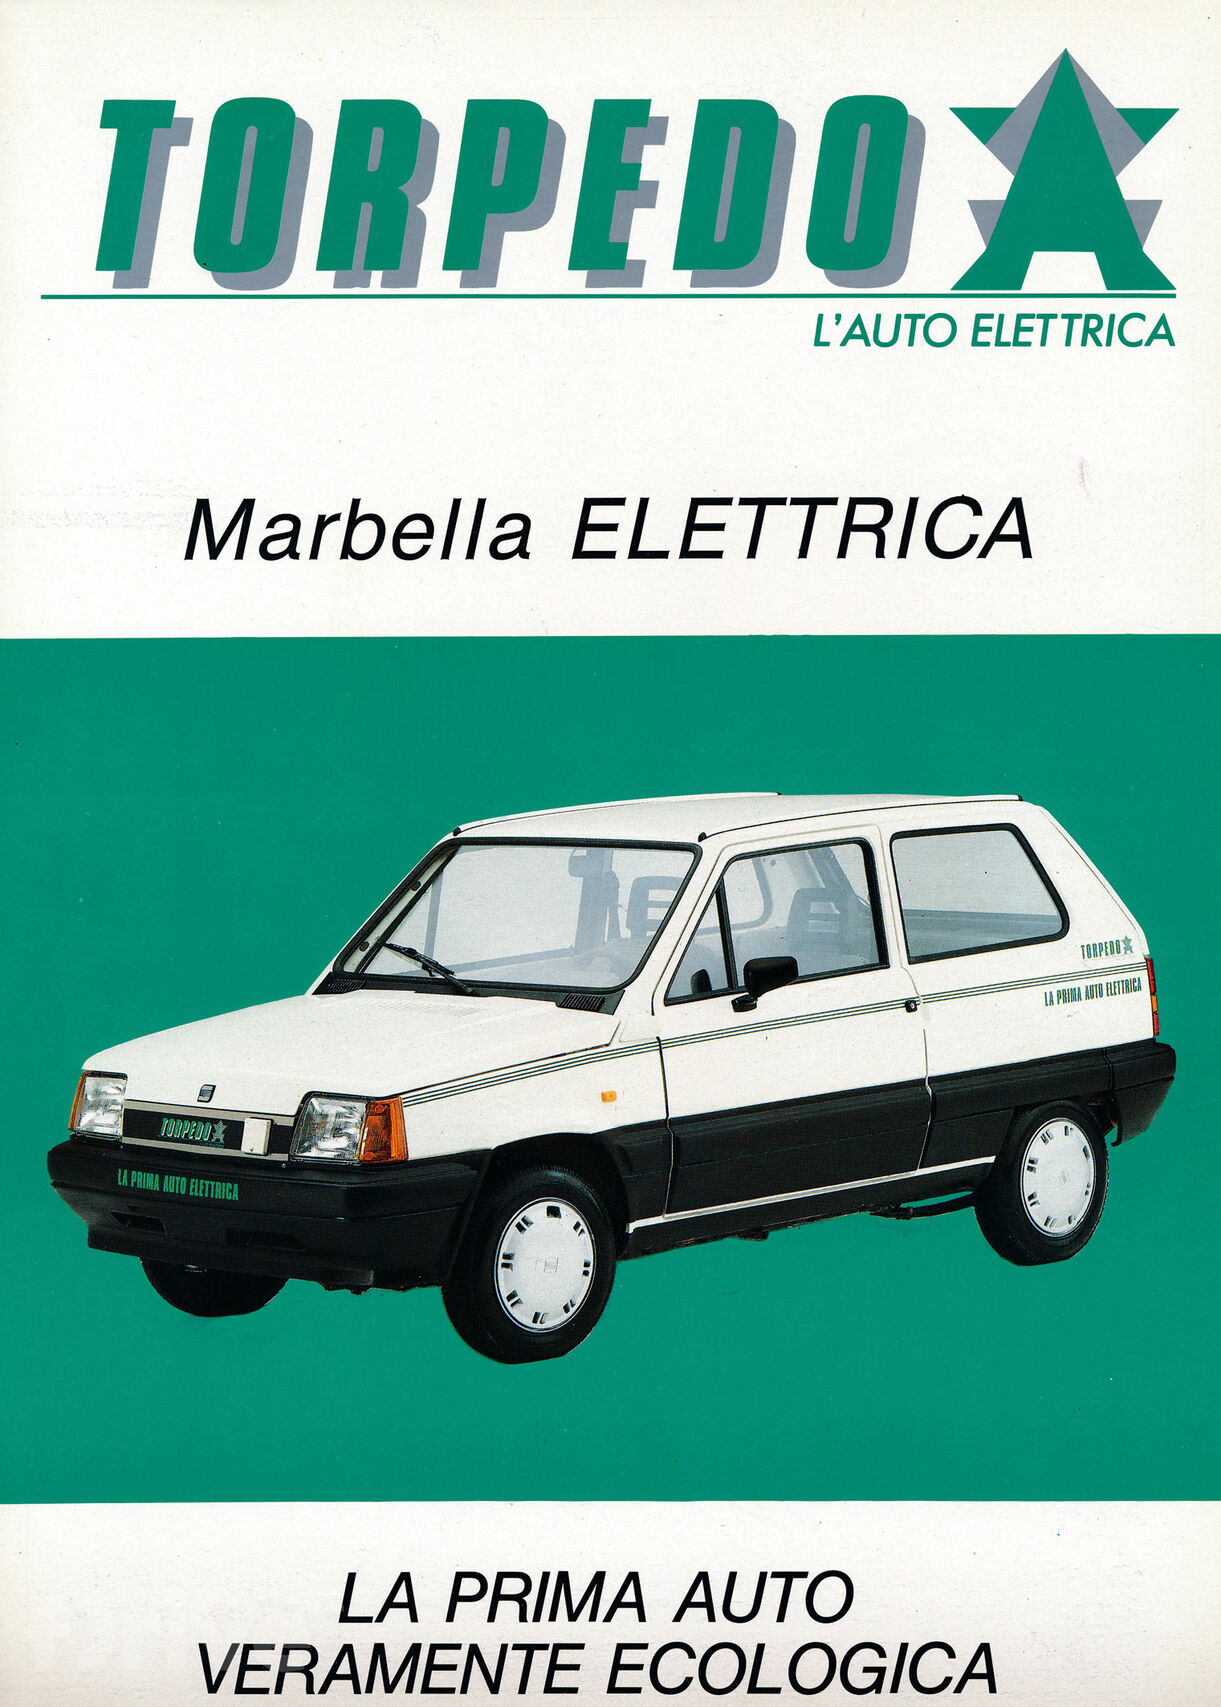 Torpedo Marbella Van Elettrica